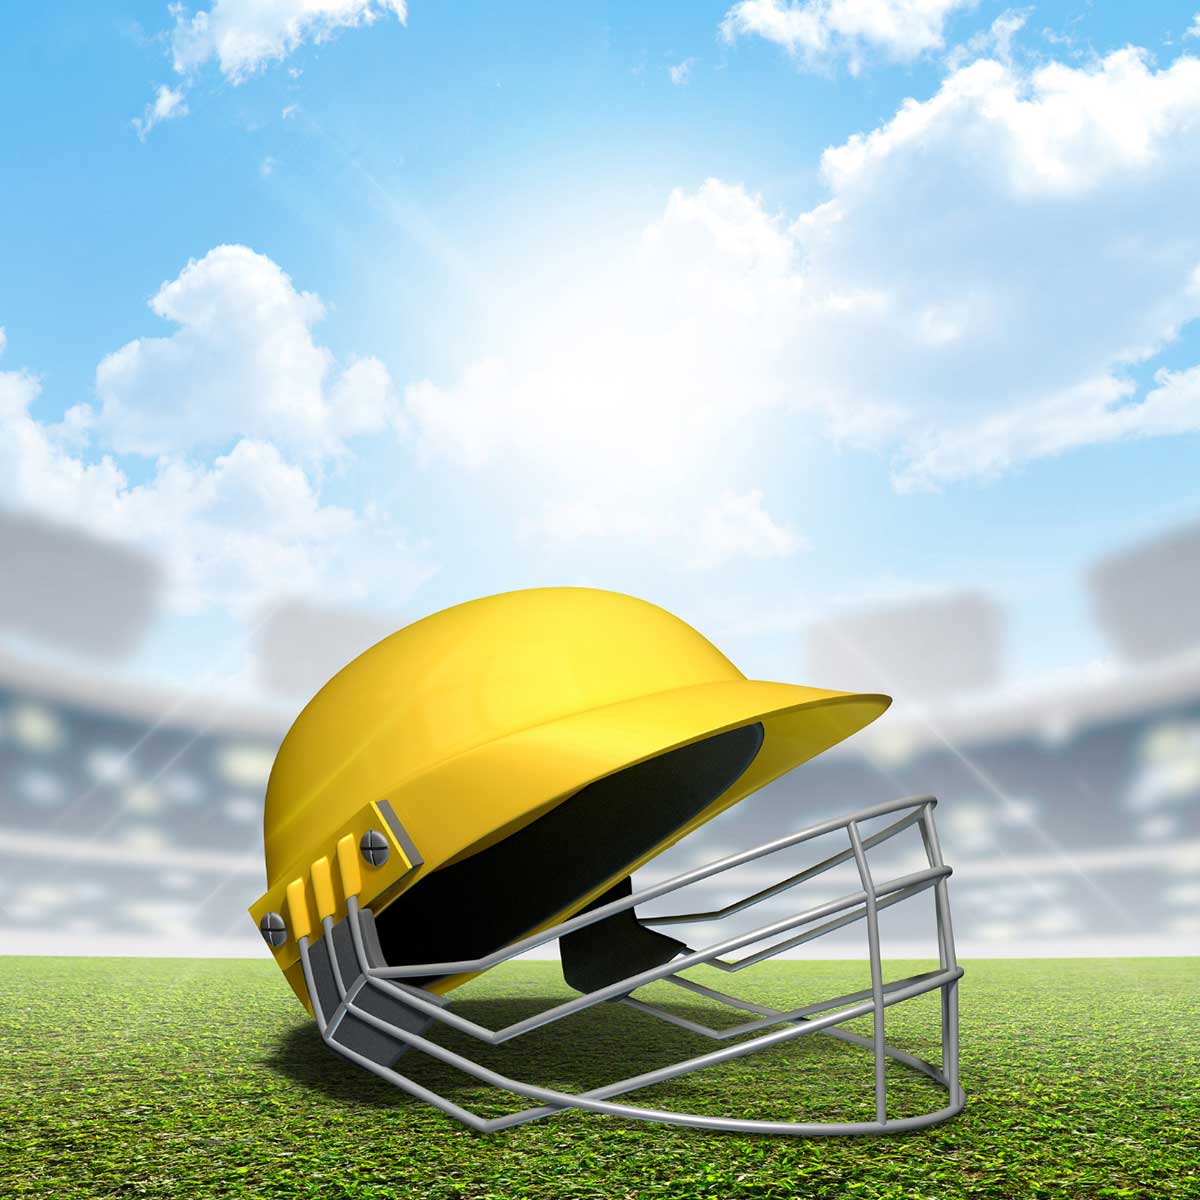 Cricket Helmet Manufacturers in Colombia